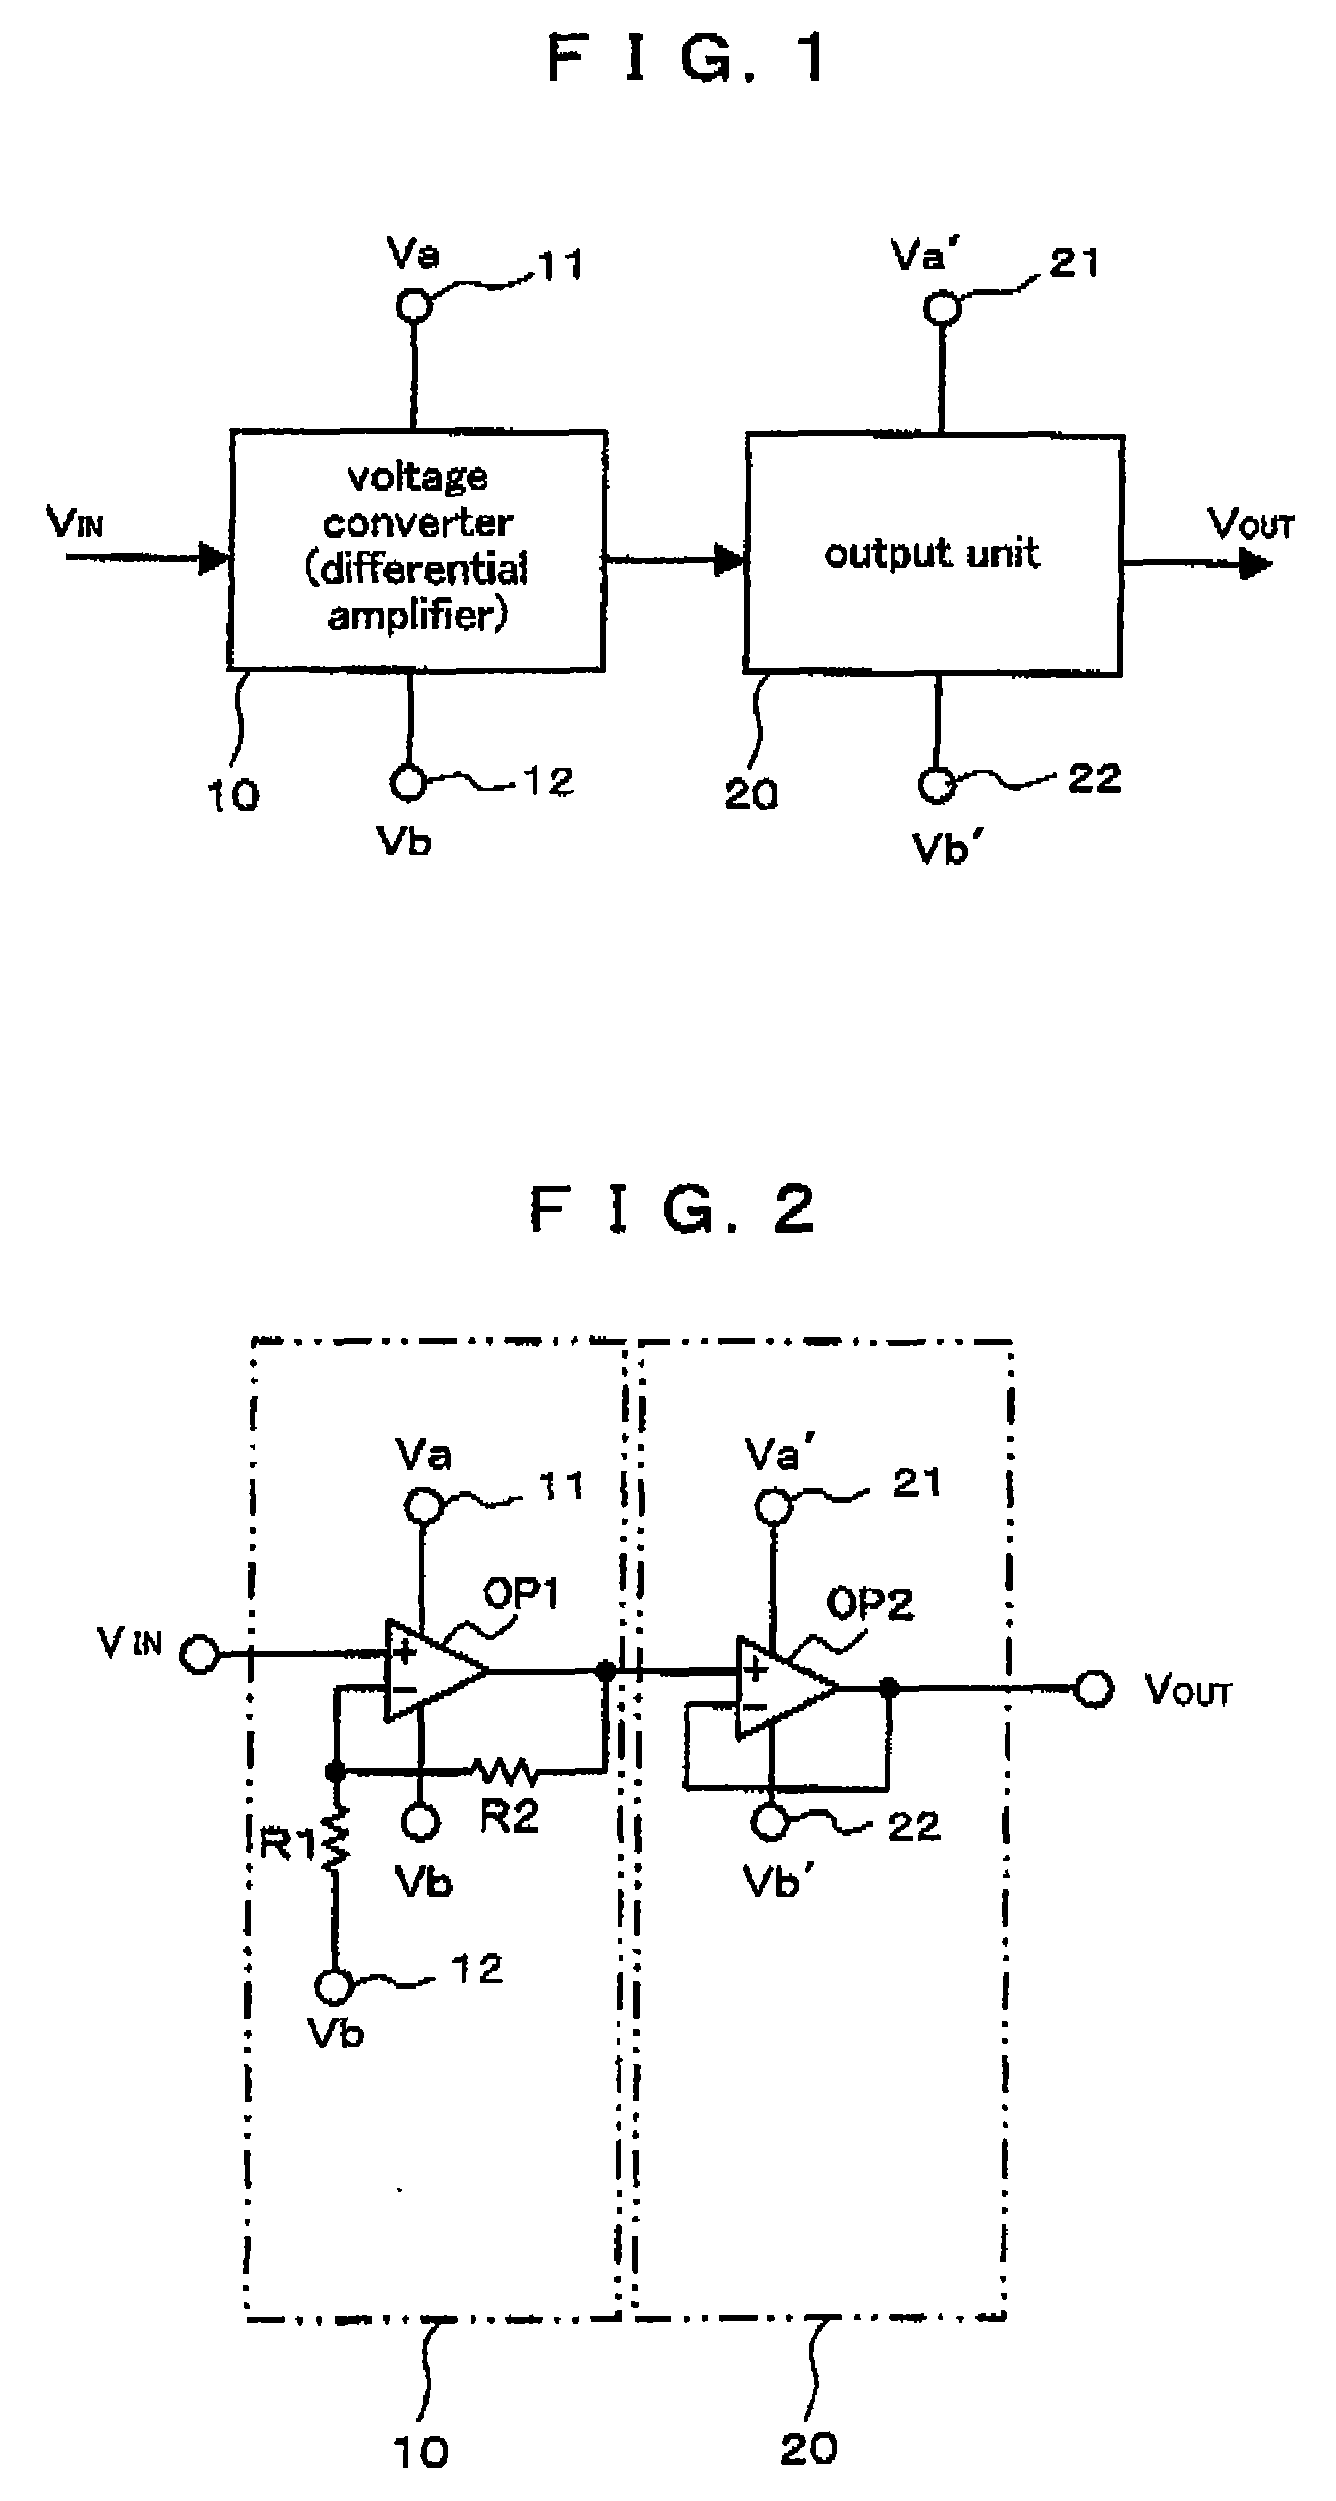 Voltage generating circuit